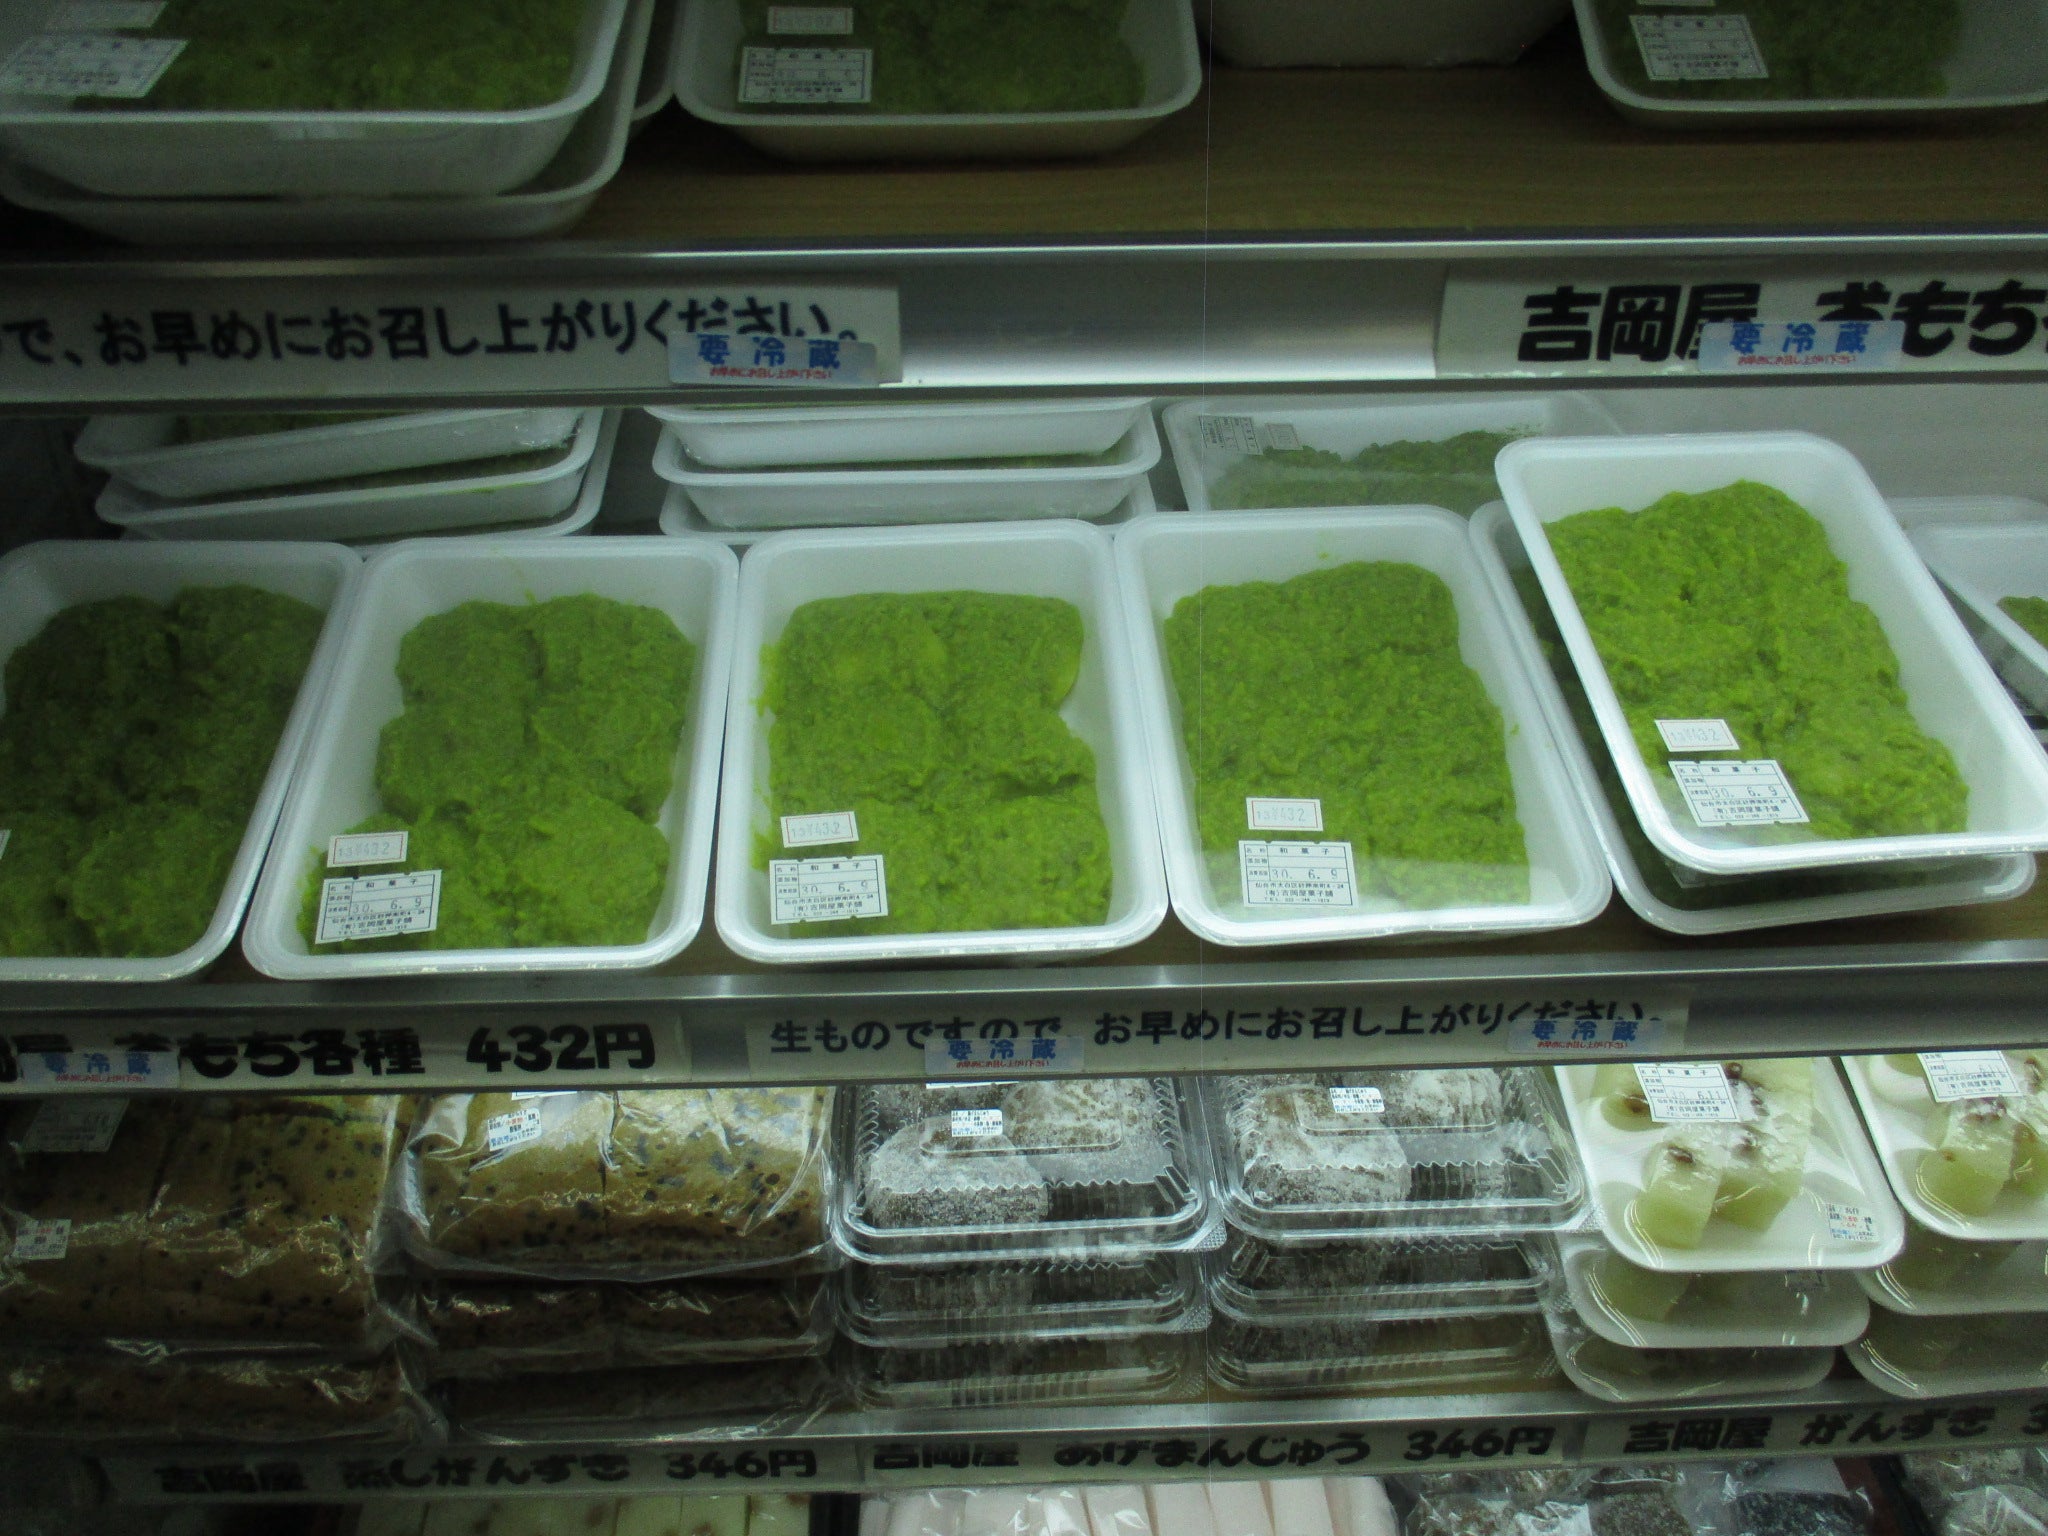 全国のスーパーで買うご当地食品を探しに(Seeking for the local food products in Japan)仙台市秋保温泉のスーパー『さいち』のおはぎ